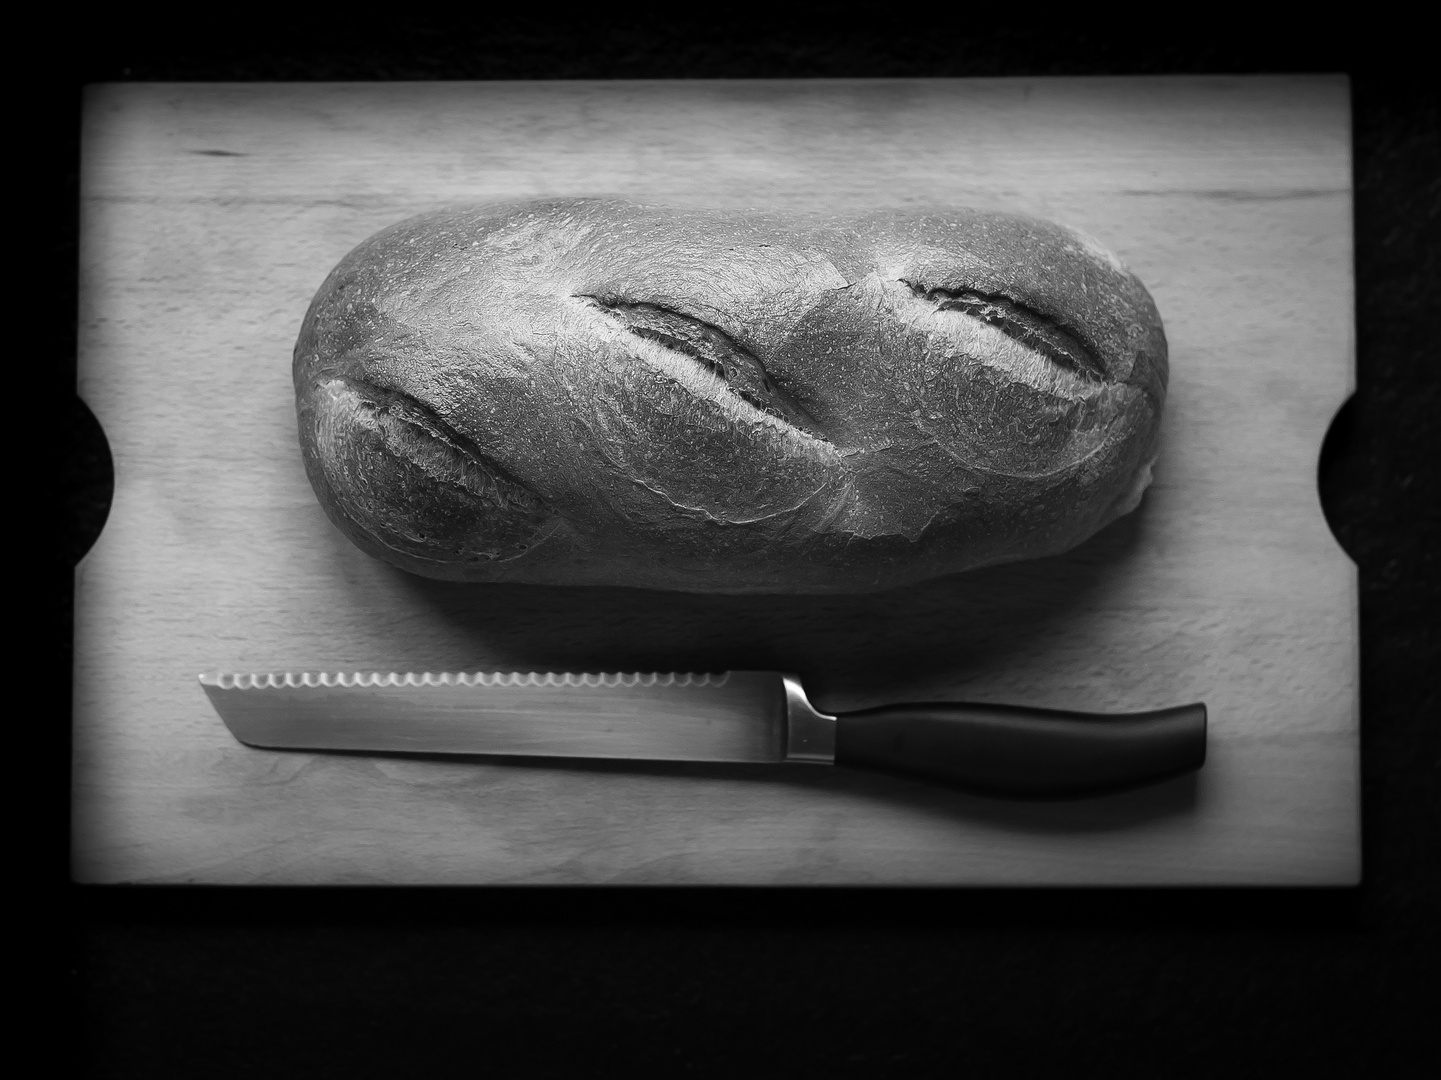 Und teilet das Brot...